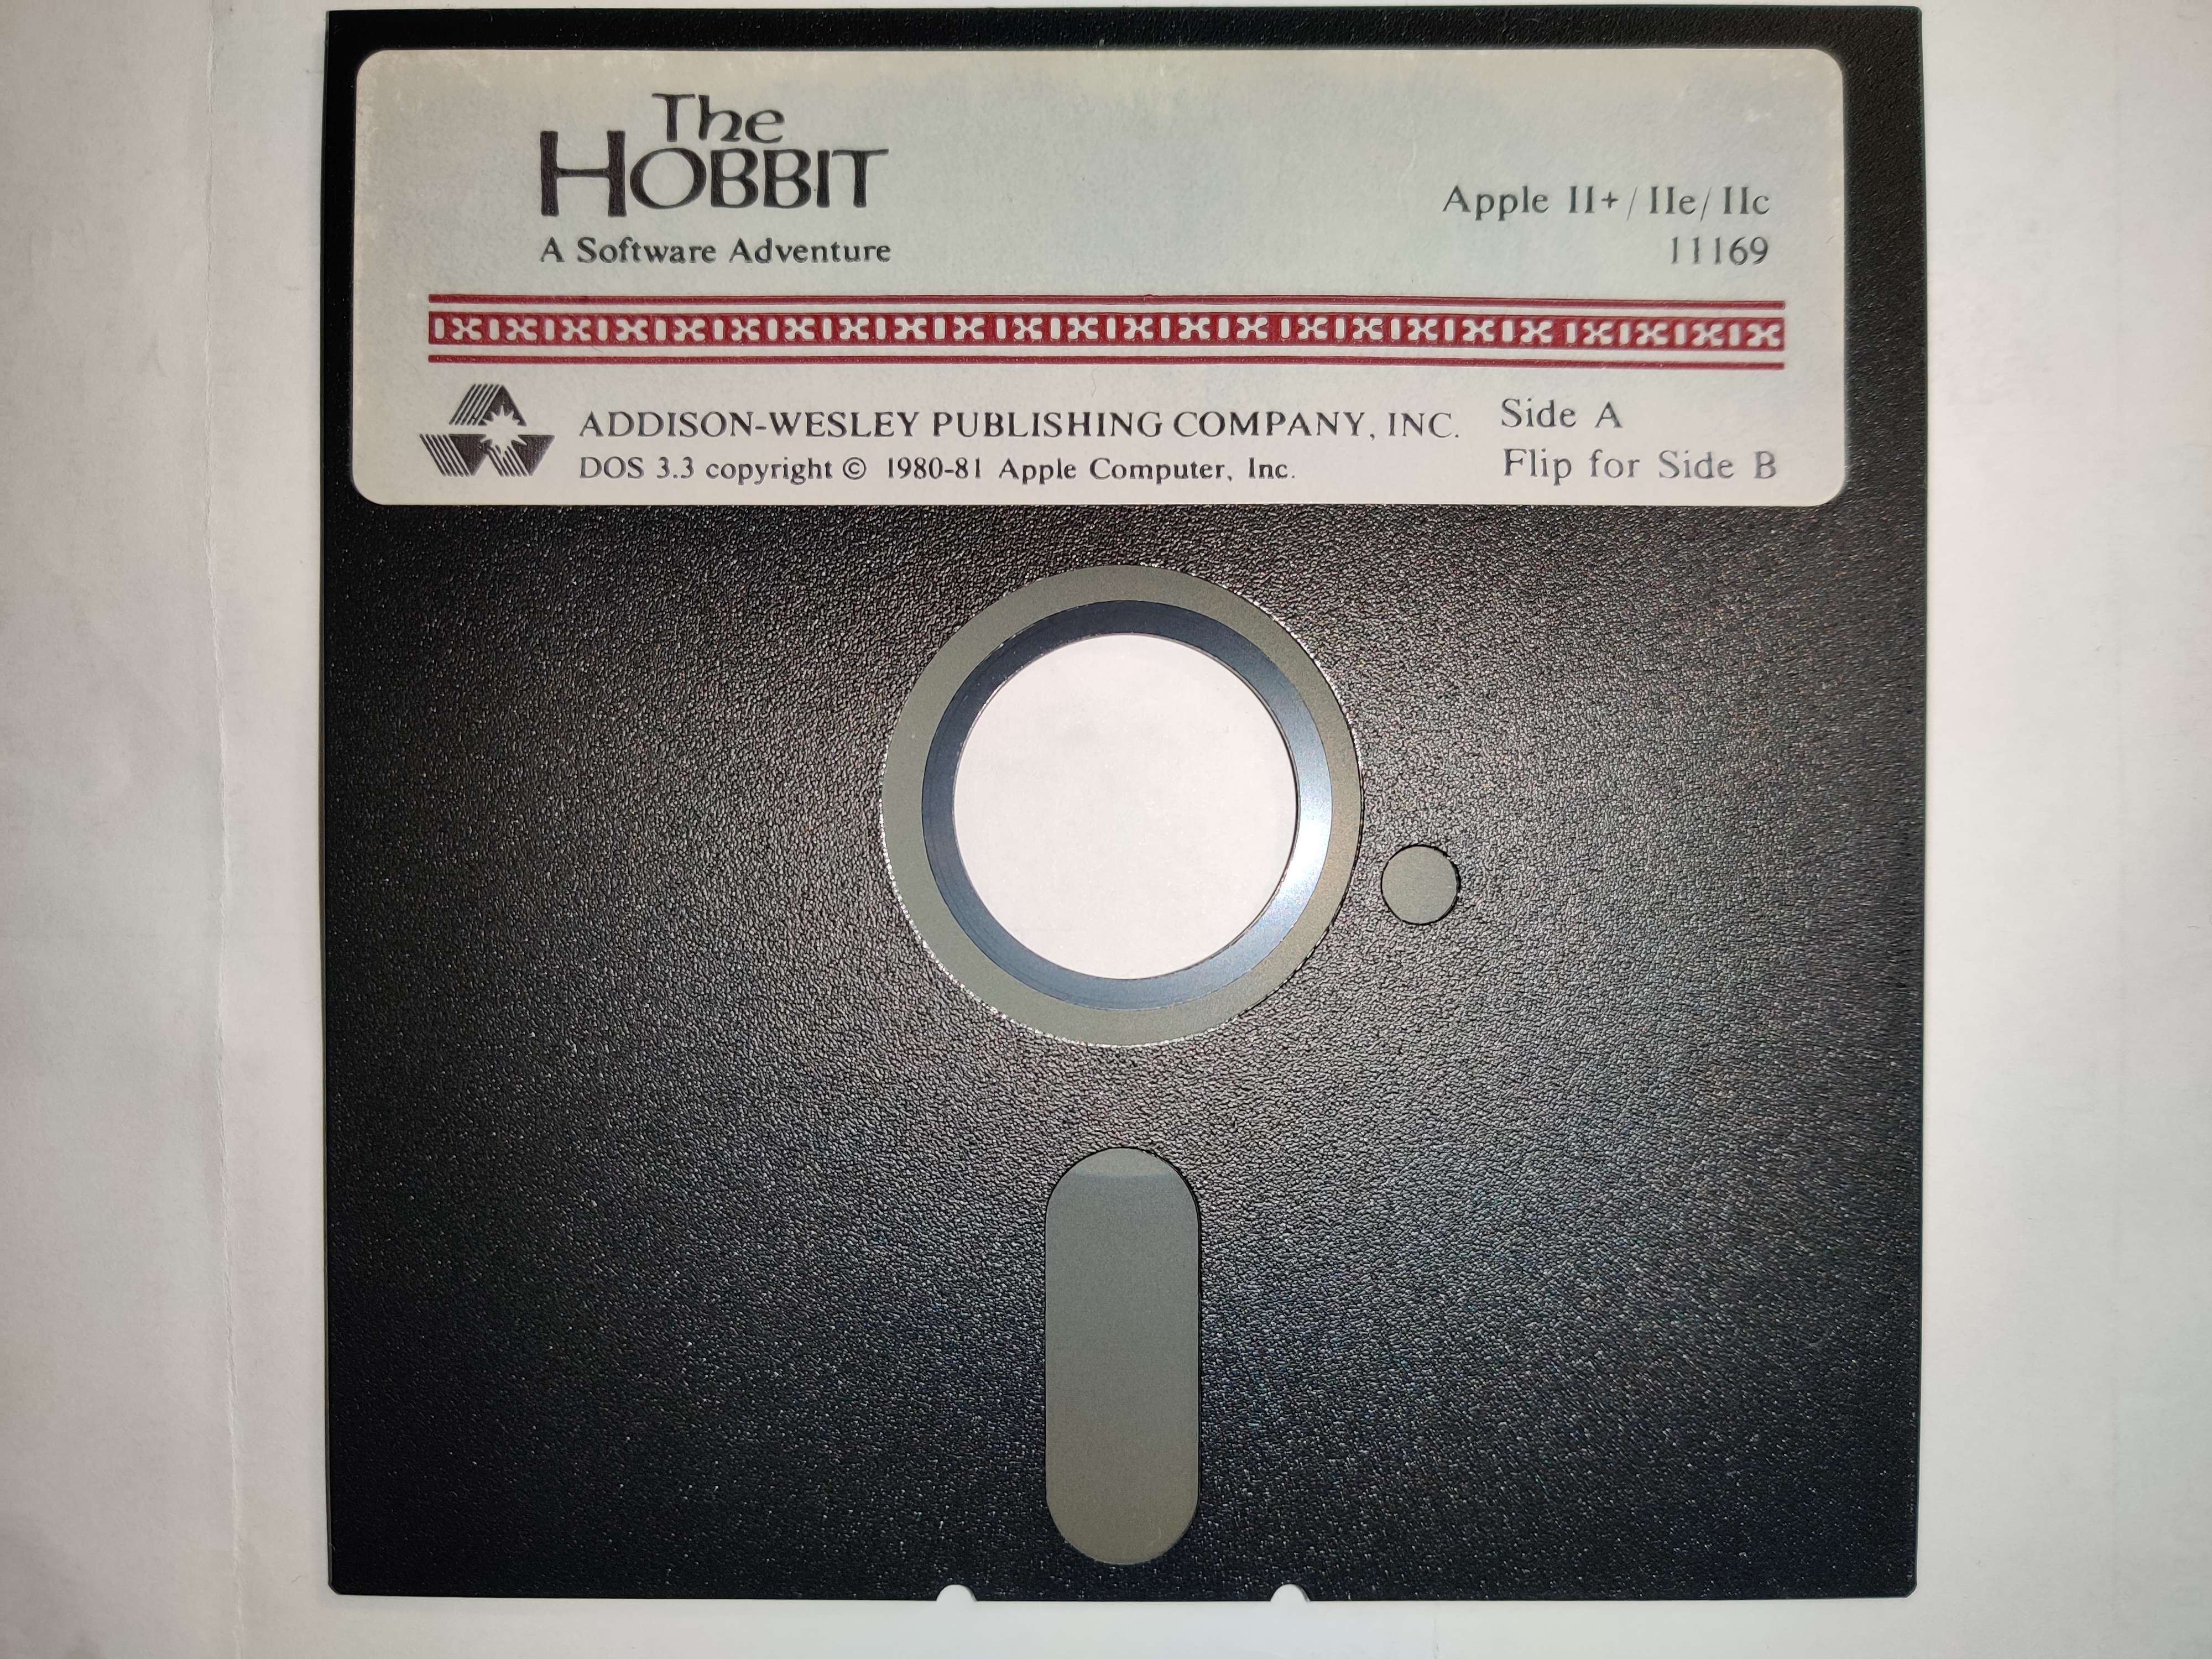 The-Hobbit-disk.jpg